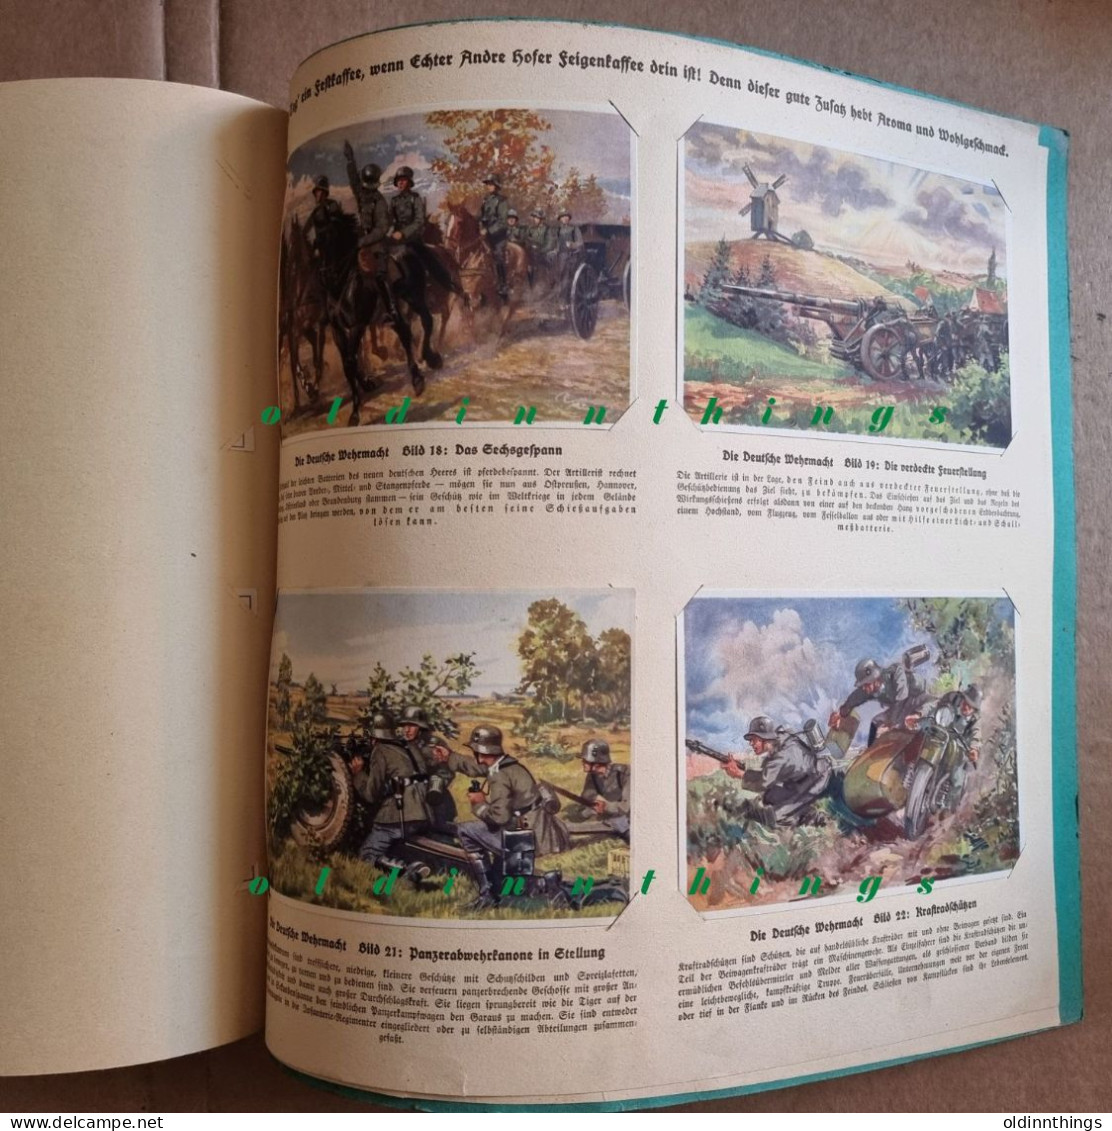 Andre Hofer Die deutsche Wehrmacht Sammel-Bilderalbum Propaganda 2.WK komplett mit 50 Bildern extrem selten